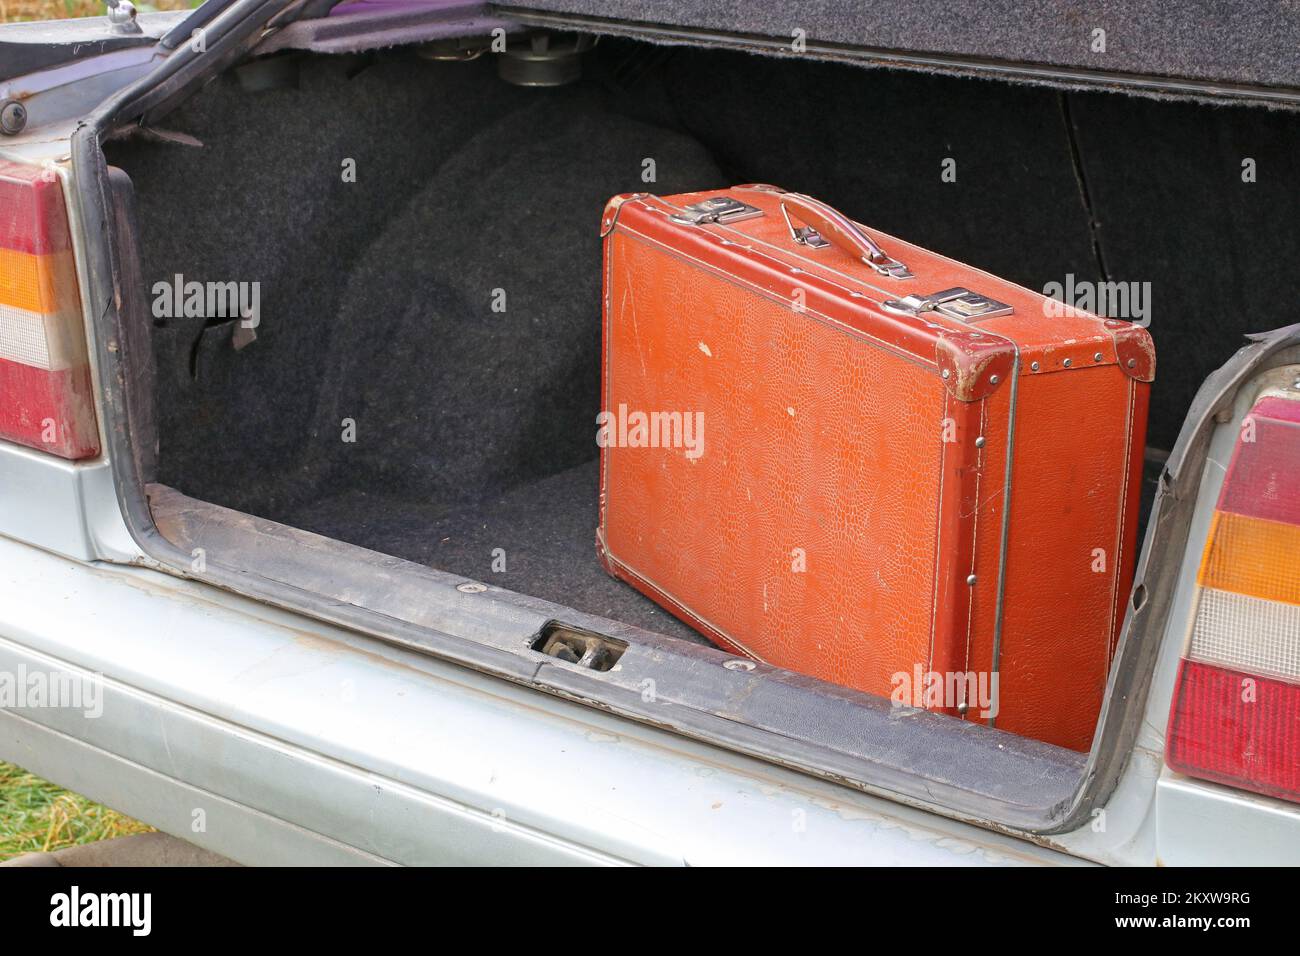 Une vieille valise dans le coffre d'une vieille voiture. Concept de voyage. Banque D'Images